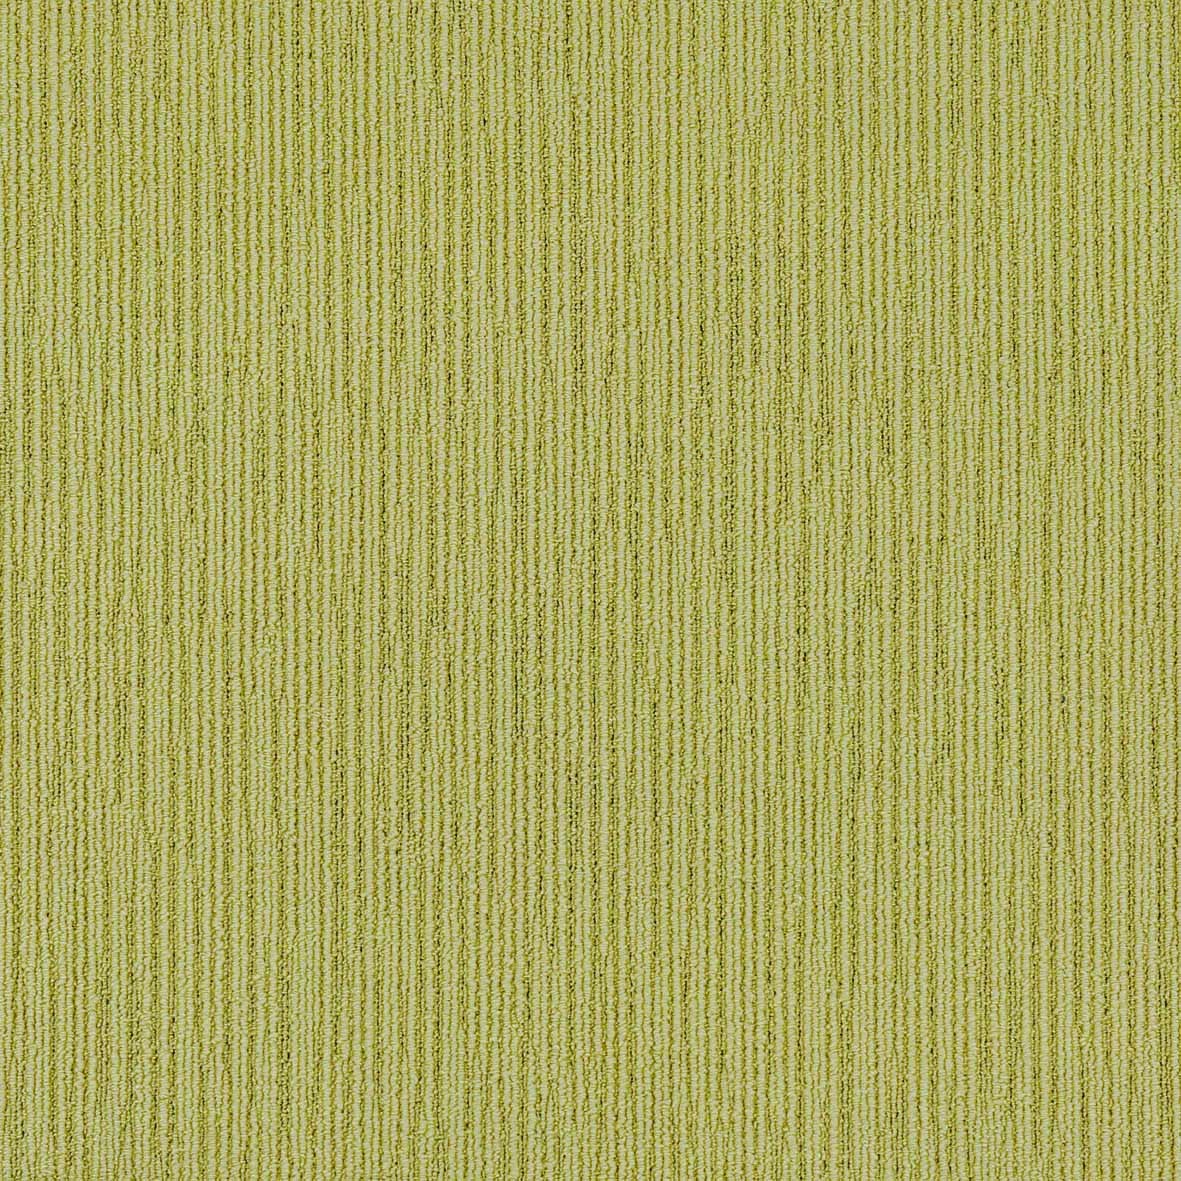 Nylon PVC Carpet Tiles